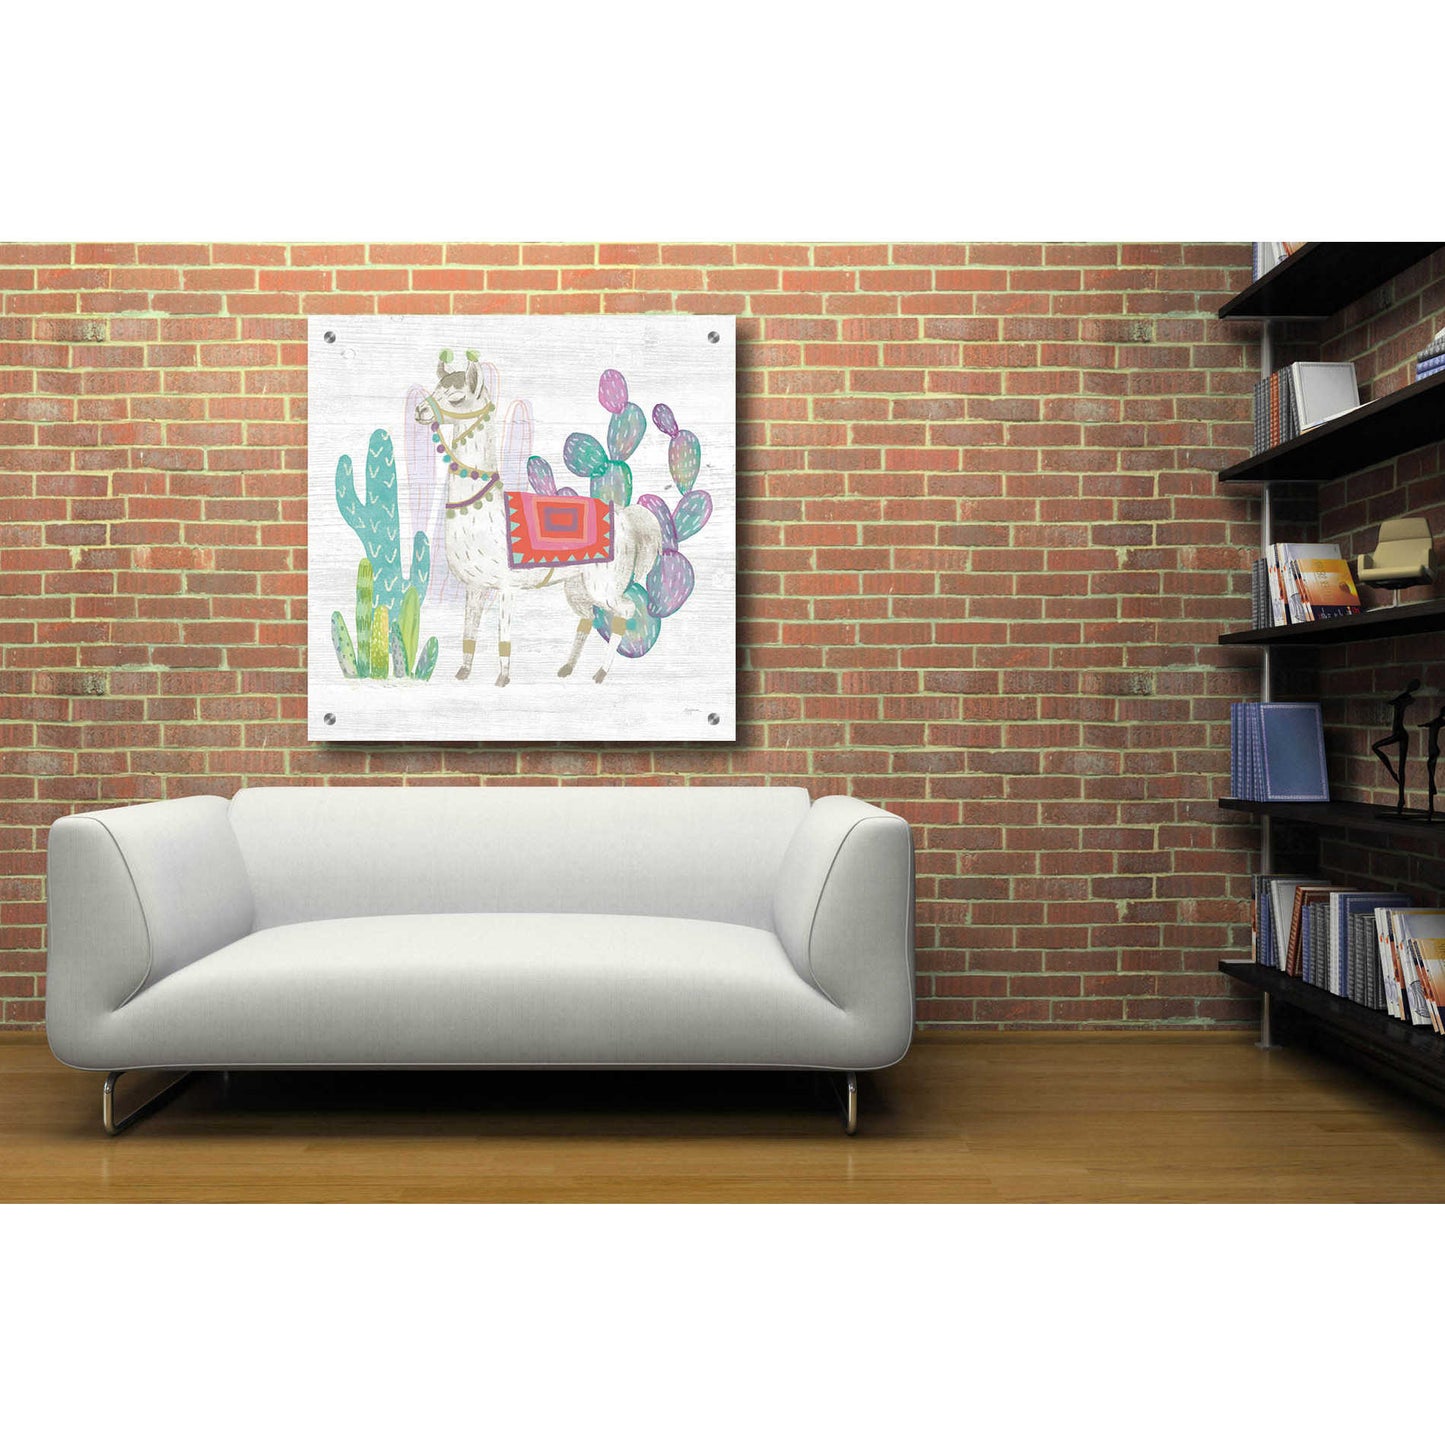 Epic Art 'Lovely Llamas V' by Mary Urban, Acrylic Glass Wall Art,36x36